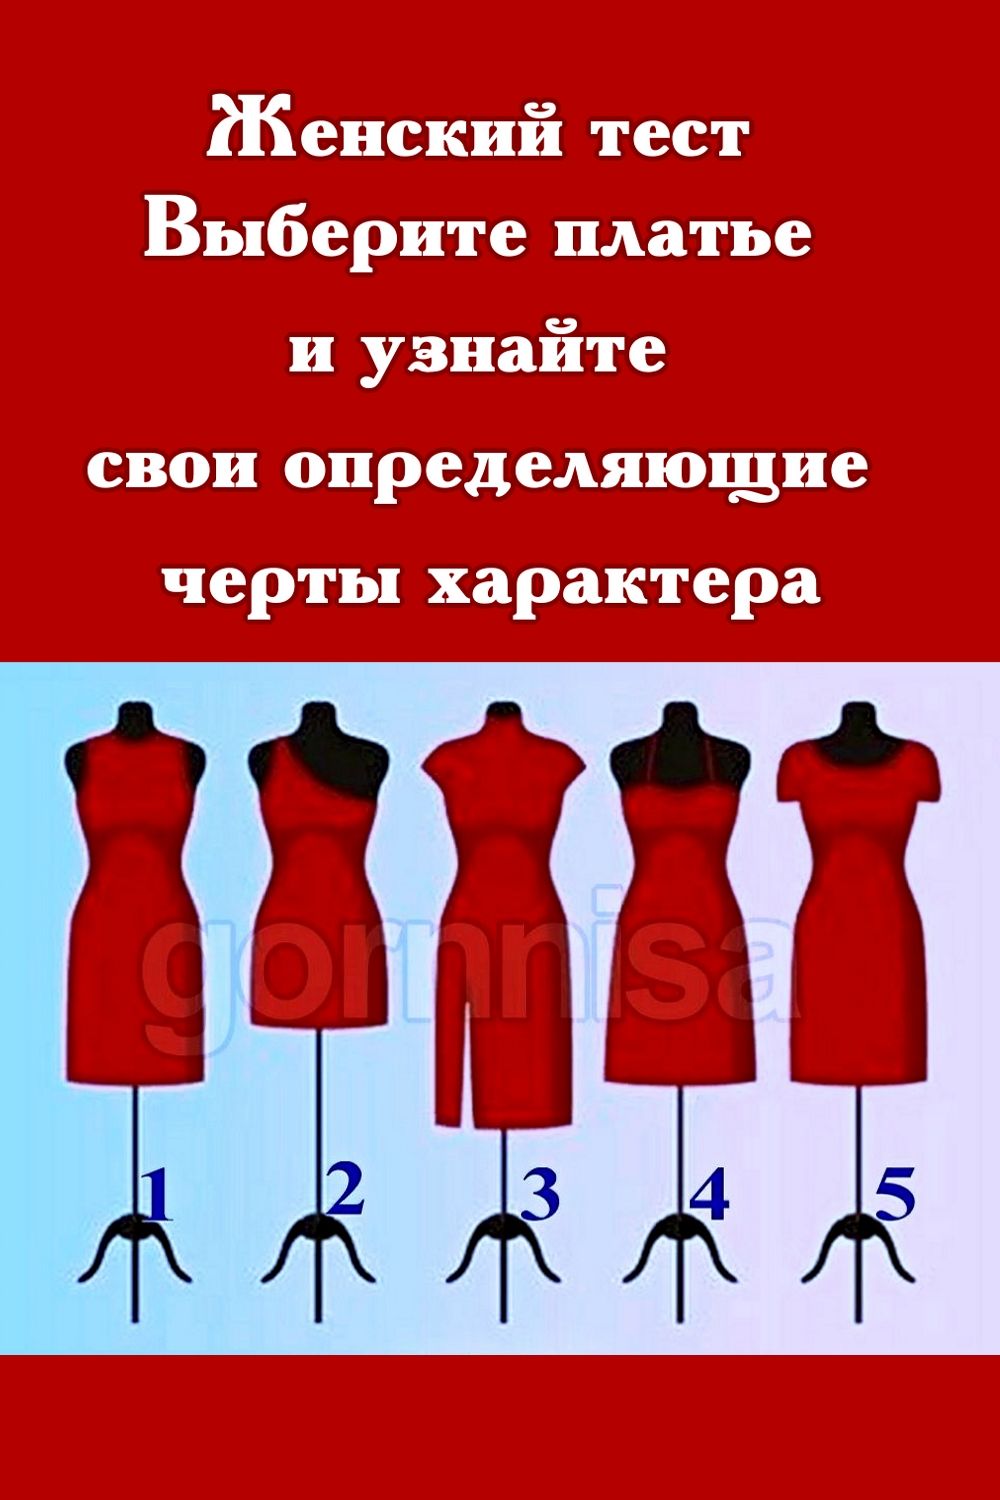 Женский тест - Выберите платье и узнайте свои определяющие черты характера 